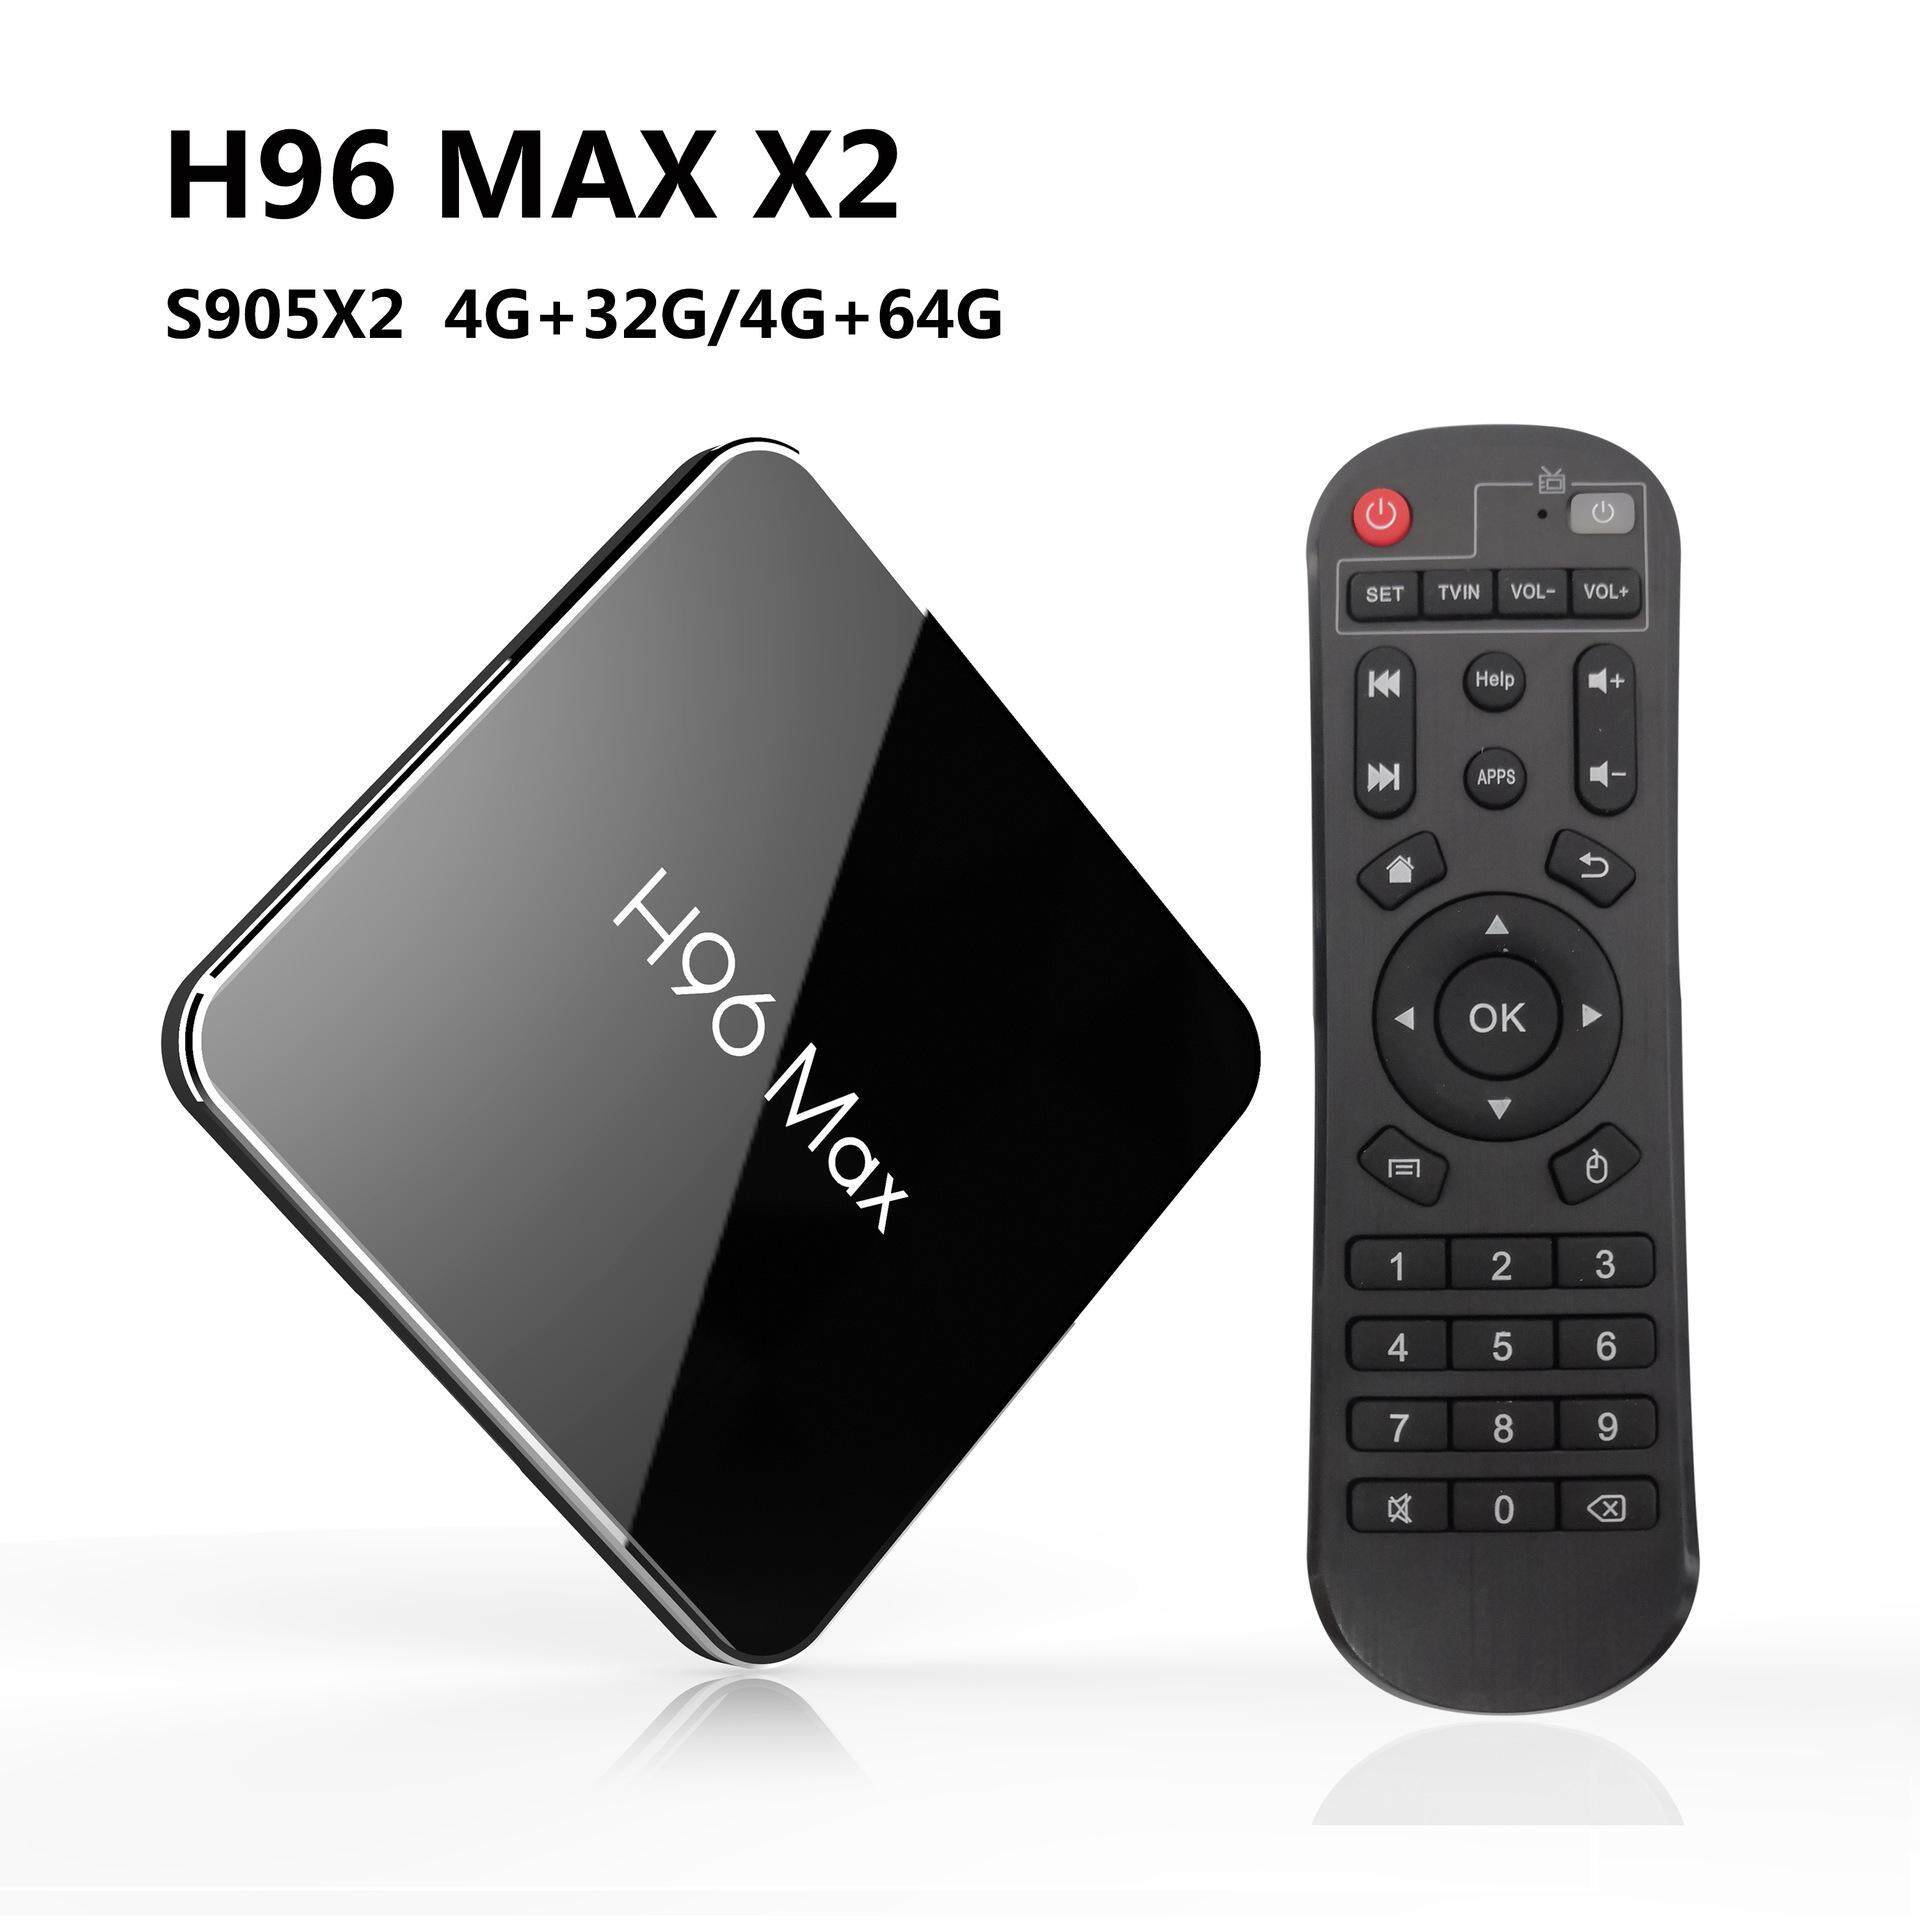  นครนายก Android Smart TV Box กล่องแอนดรอยด์รุ่นใหม่ปี 2019 H96 MAX X2 แรม4GB/64GB S905X2 android 8.1+แอพดูฟรีทีวีออนไลน์ ละคร ย้อนหลัง ฟังเพลง ยูทูป กูเกิล เฟซบุ๊ค + (ฟรี เม้าส์ไวเลสไร้สาย+สาย HDMI+รีโมท+ถ่านพานาโซนิคอัลคาไลน์ 2 ก้อน+คู่มือติดตั้งไทย)